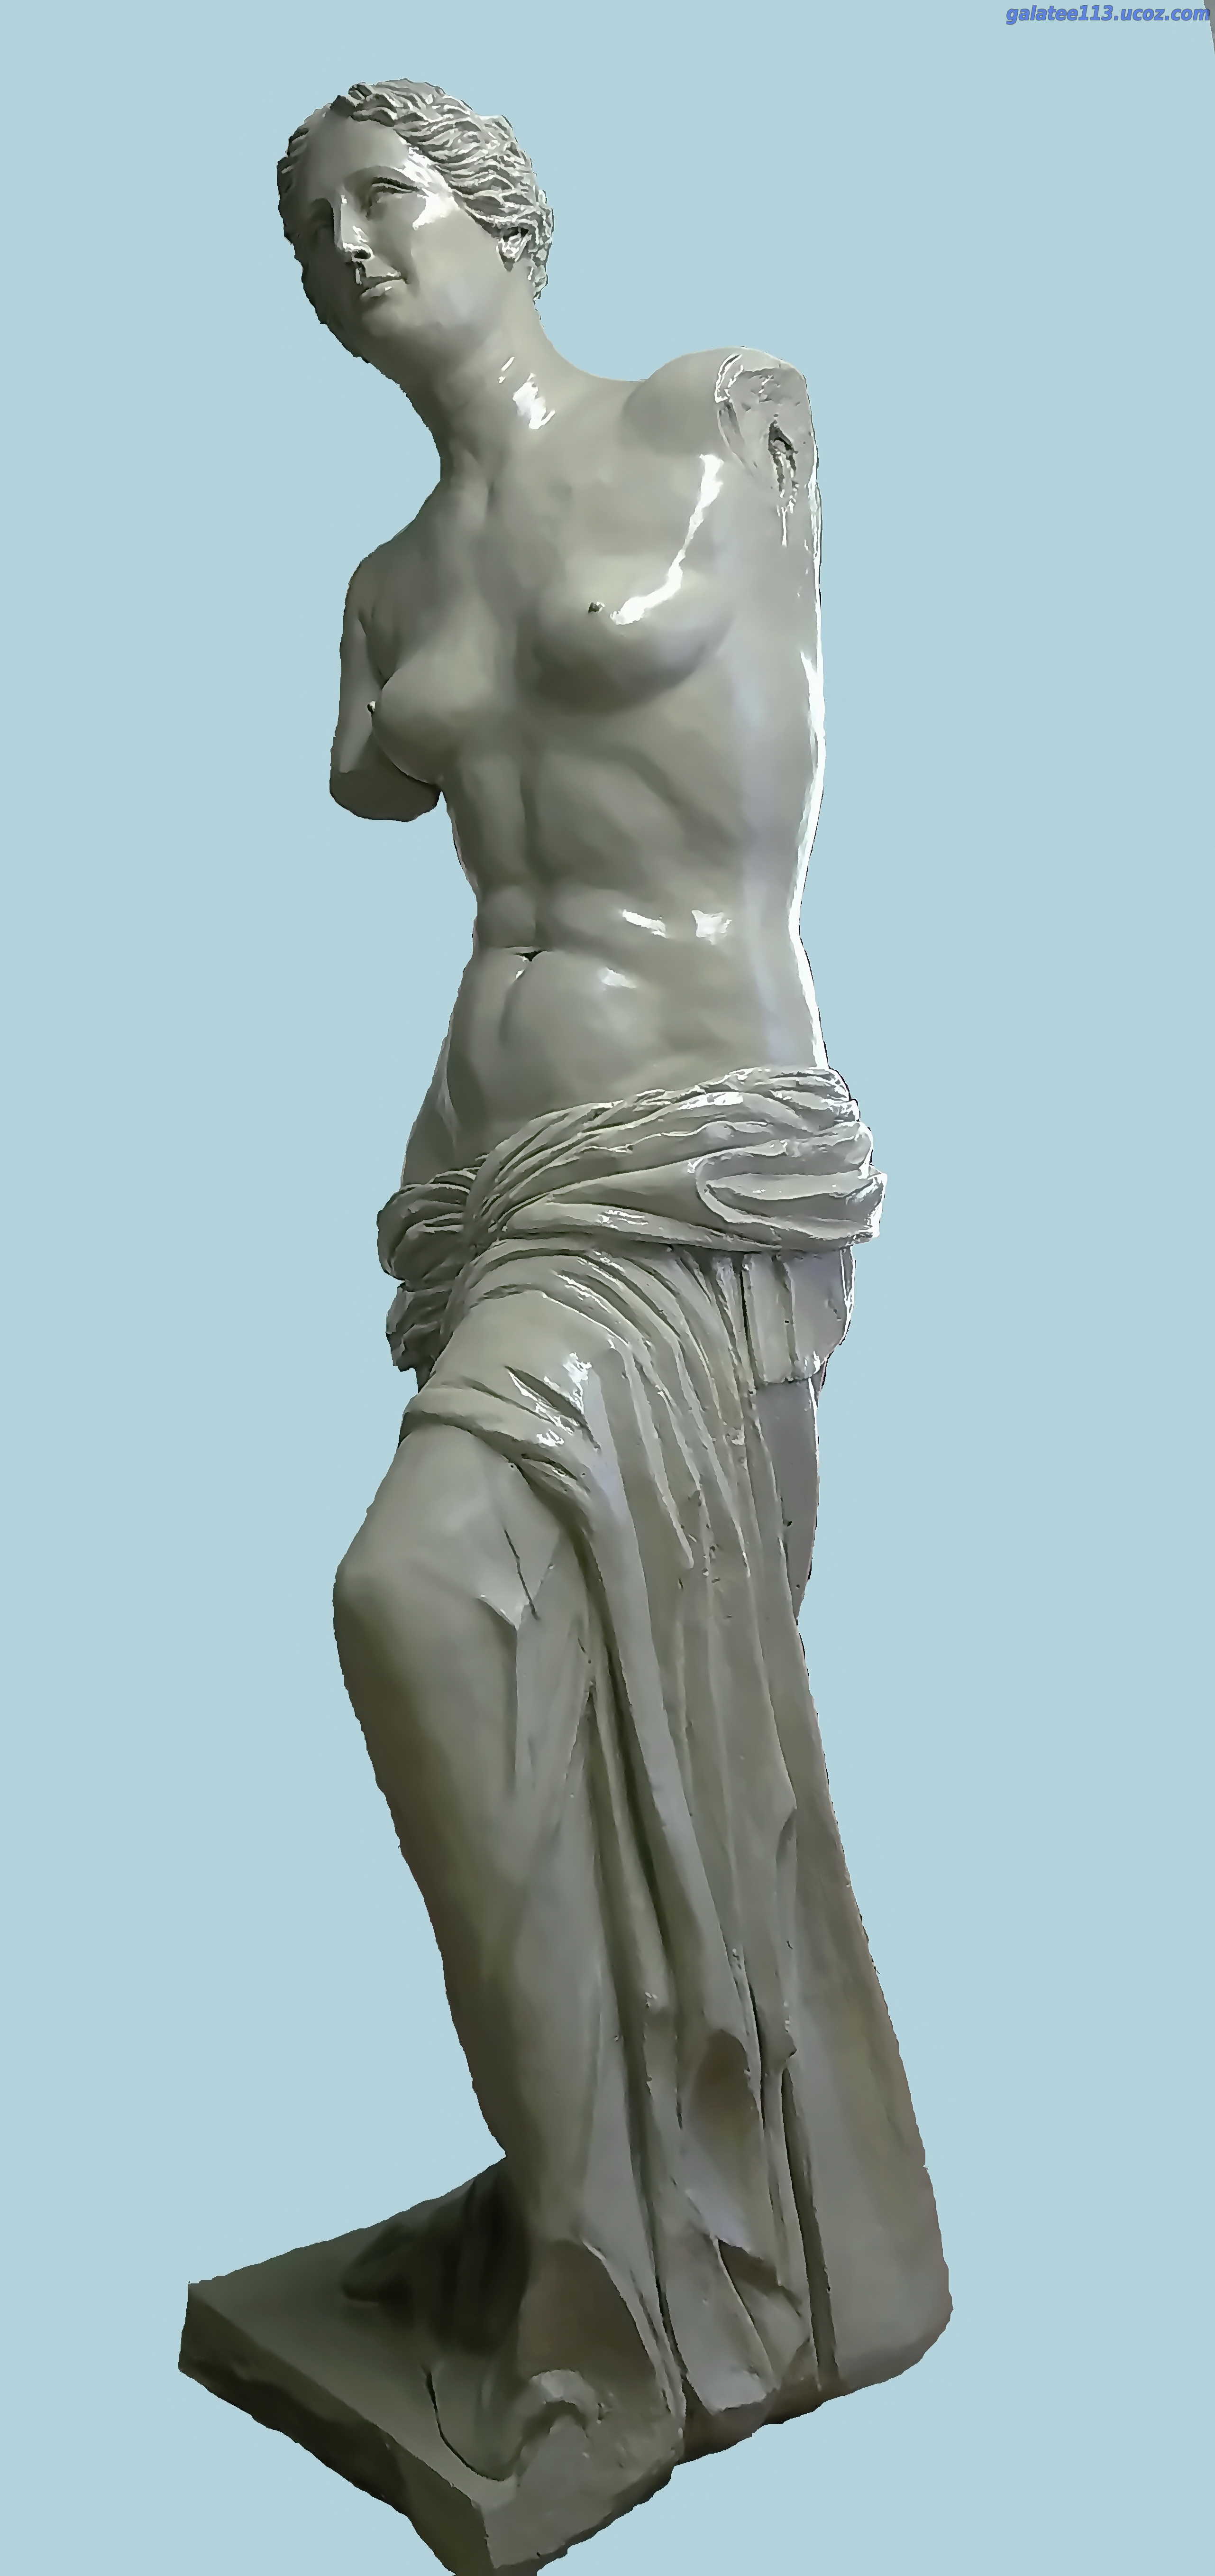 скульптура венеры Милосской